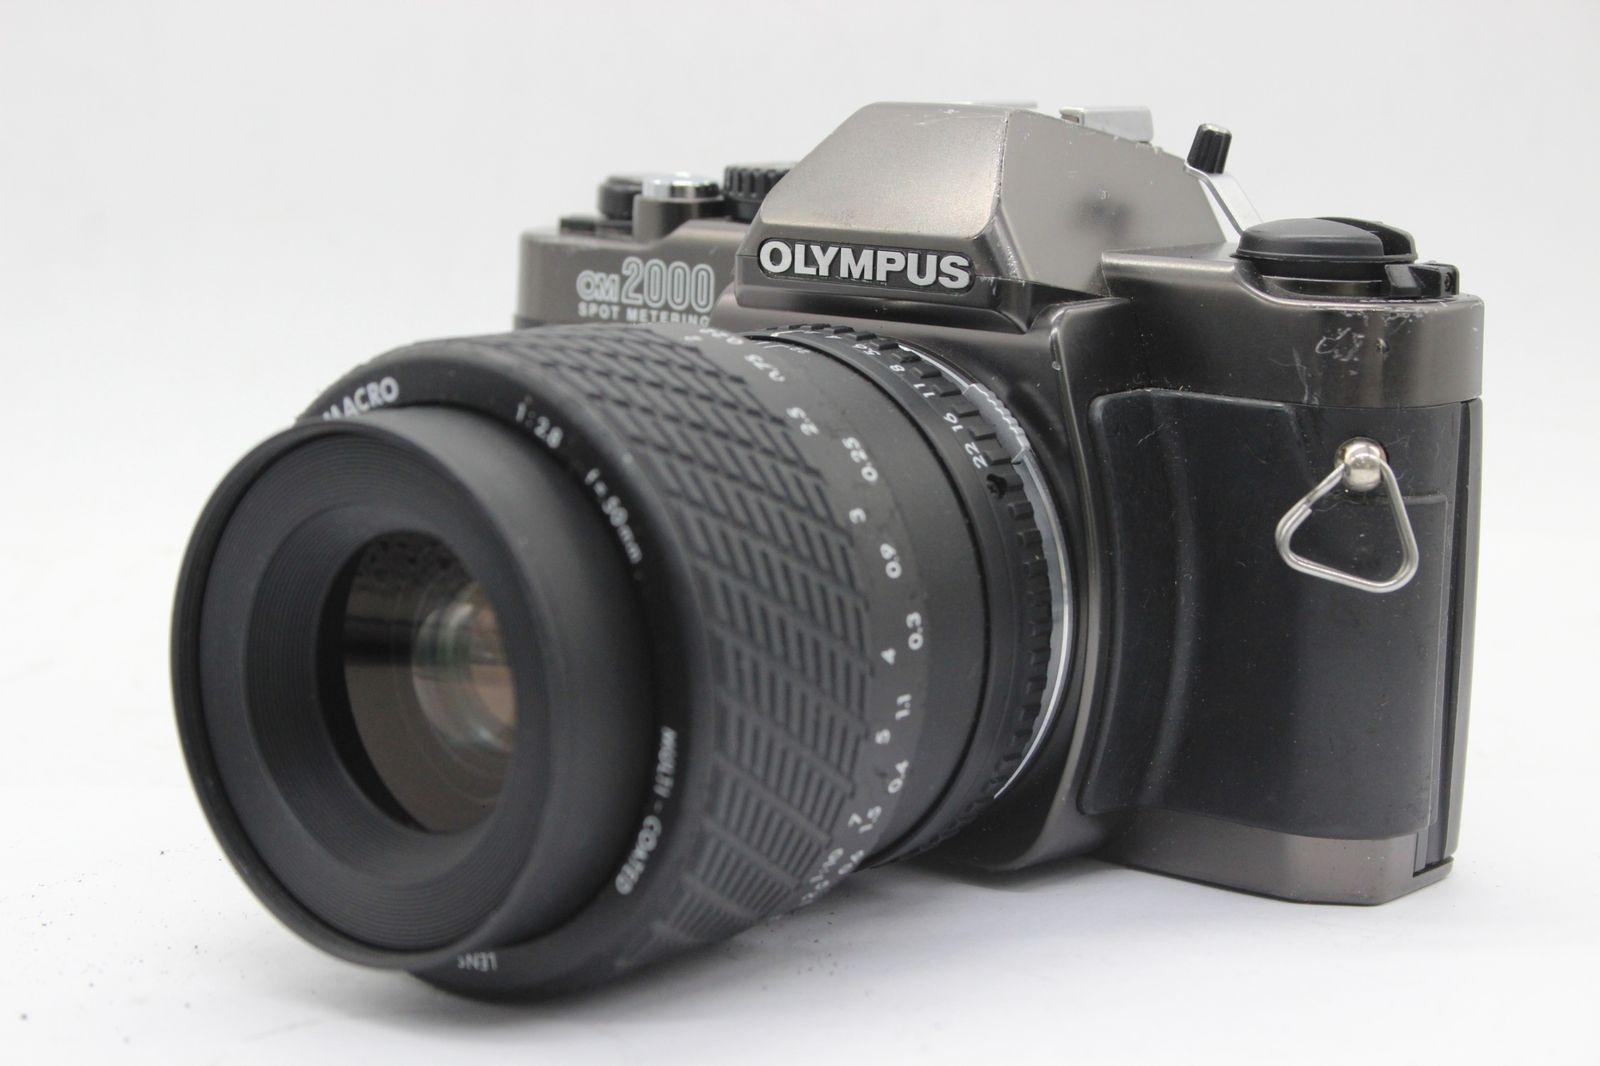 返品保証】 オリンパス Olympus OM2000 SPOT METERING SIGMA MACRO 50mm F2.8 ボディレンズセット  s9833 - メルカリ